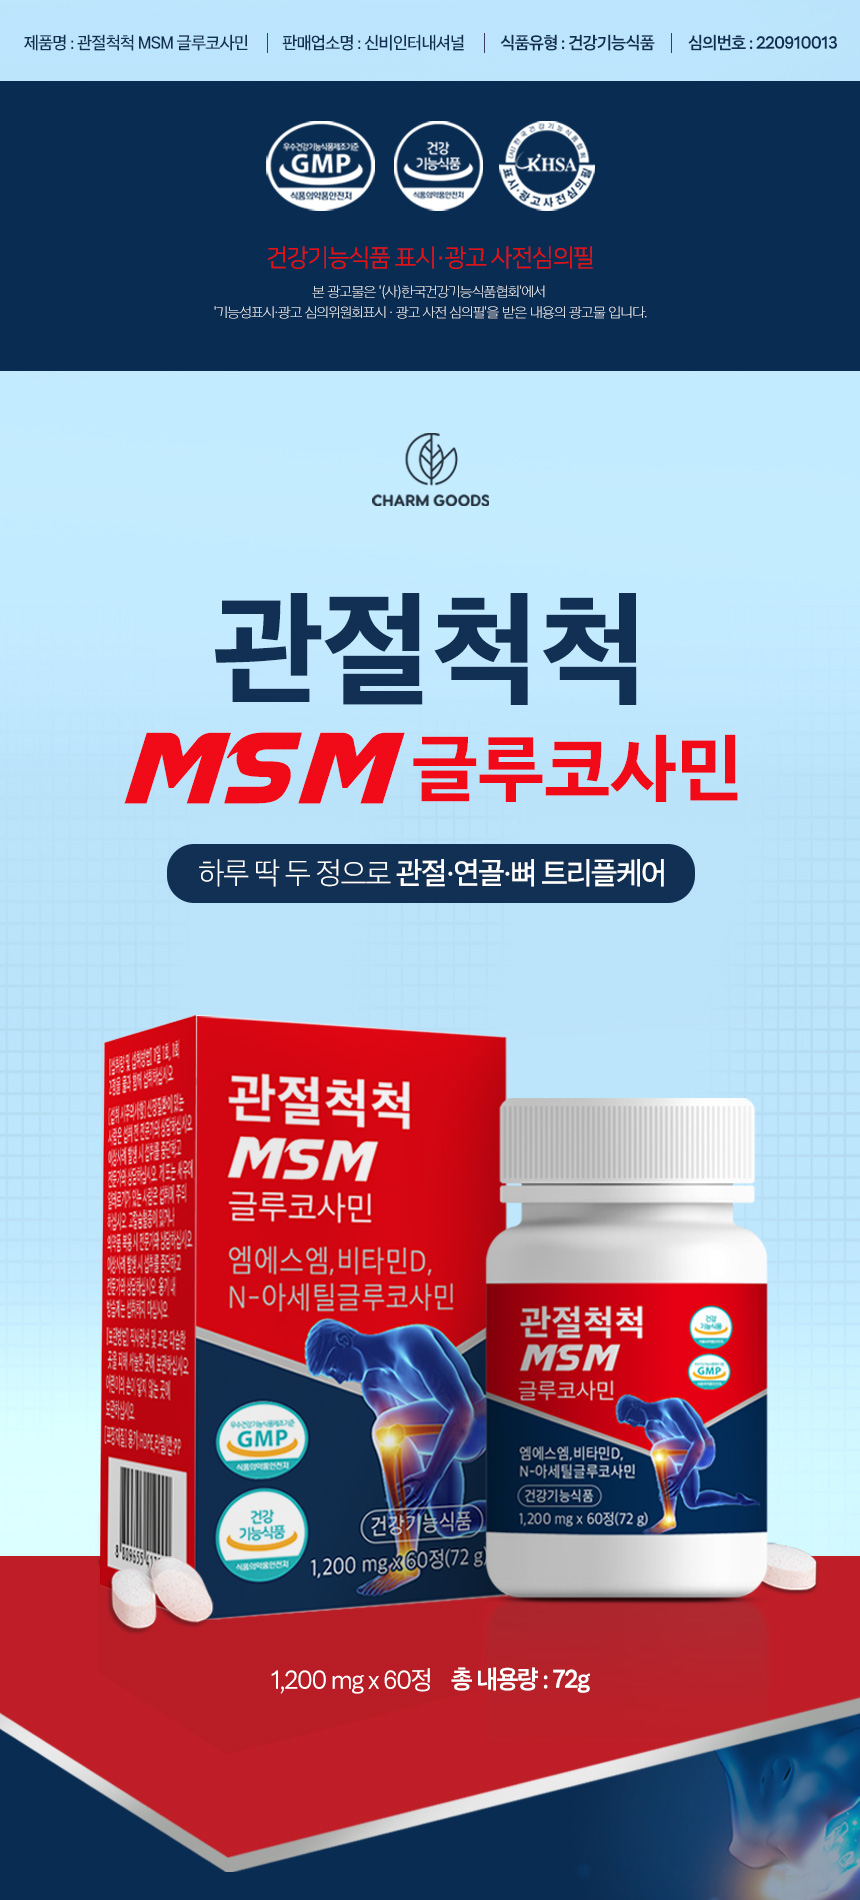  MSM ۷ڻ 60 MSM MSM MSM۷ڻ MSM۷ڻο MSM  纸 纸 ɼ ɼ纸